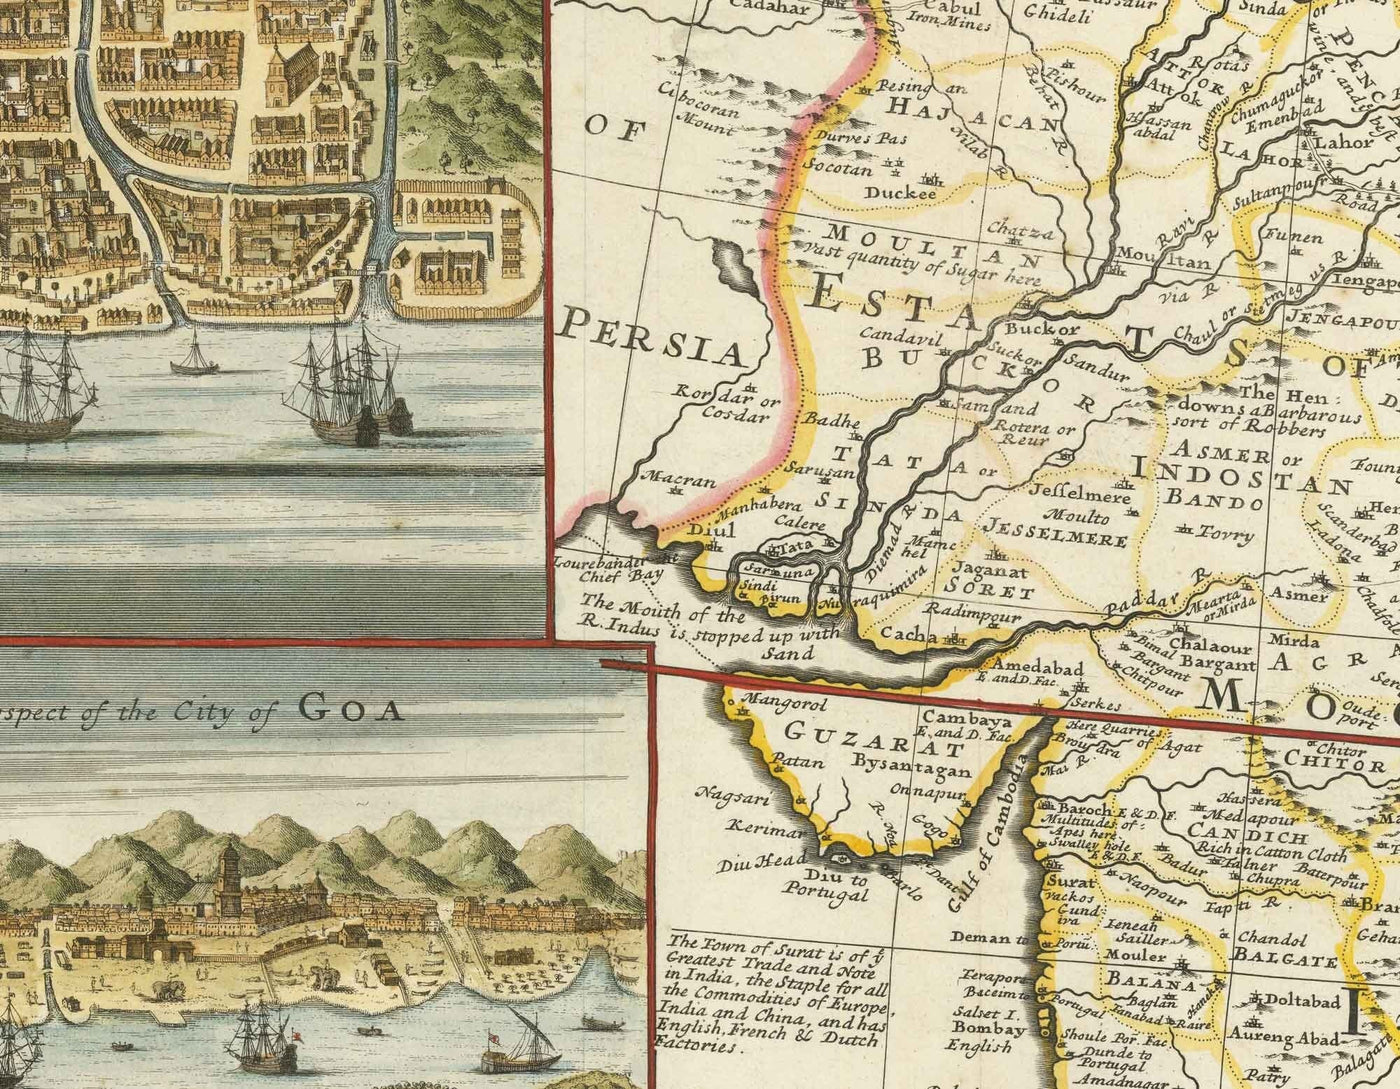 Mapa antiguo de la India y el Sudeste Asiático, 1717 por Herman Moll - Indias Orientales Coloniales, China, Malasia, Tailandia, Singapur, Indonesia